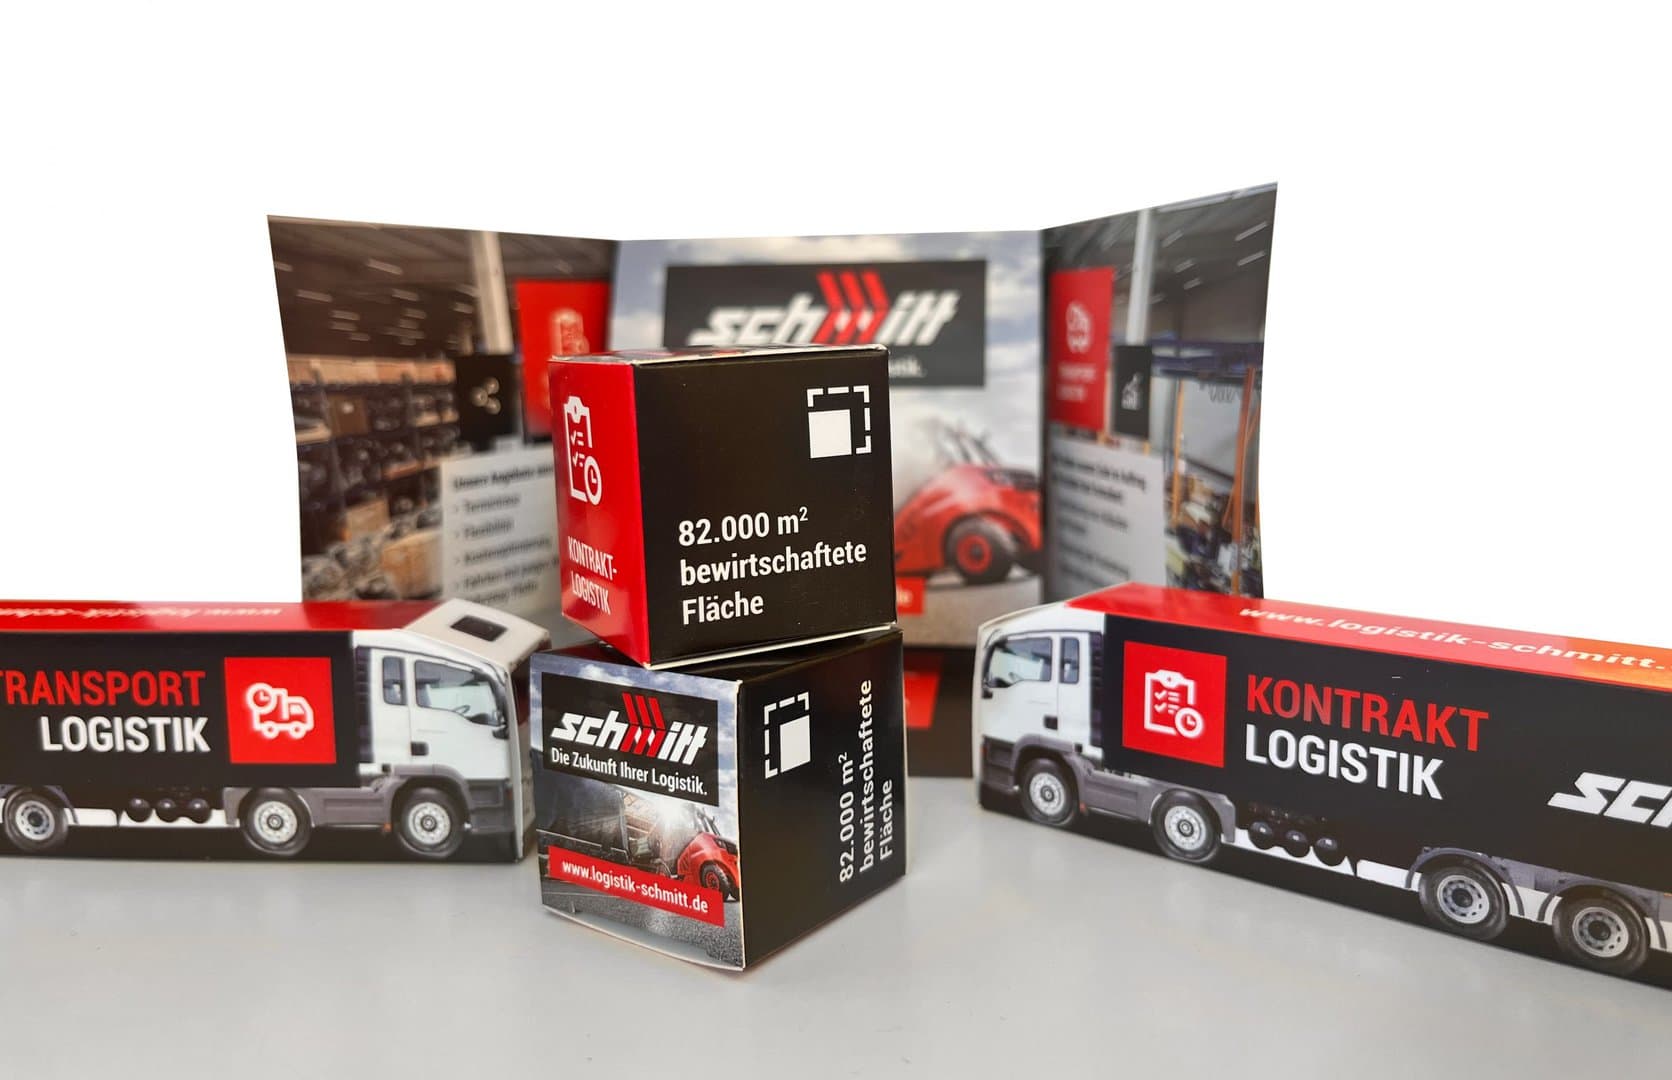 Zwei kleine Logistik-Modell-LKWs und zwei kleine Kisten mit Logistik-Branding vor einem gefalteten Hintergrunddisplay.